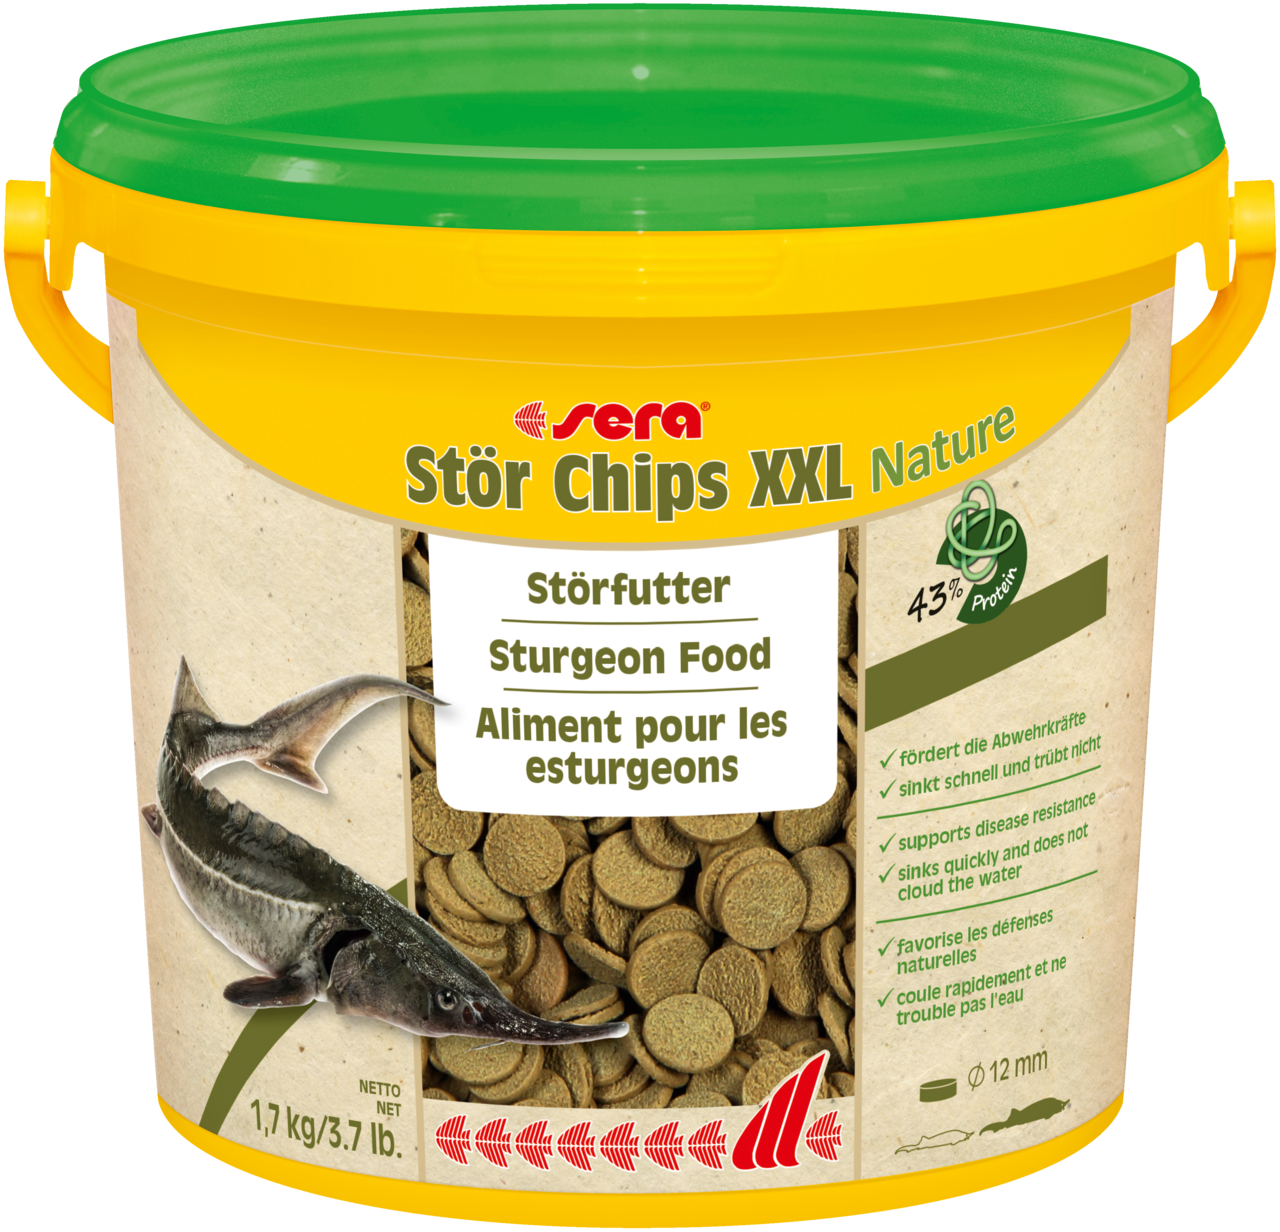 sera Stör Chips XXL Nature ist das Hauptfutter aus schonend hergestellten Chips ohne Farb- und Konservierungsstoffe für große carnivore Teichfische wie Störe ab einer Länge von 40 cm.